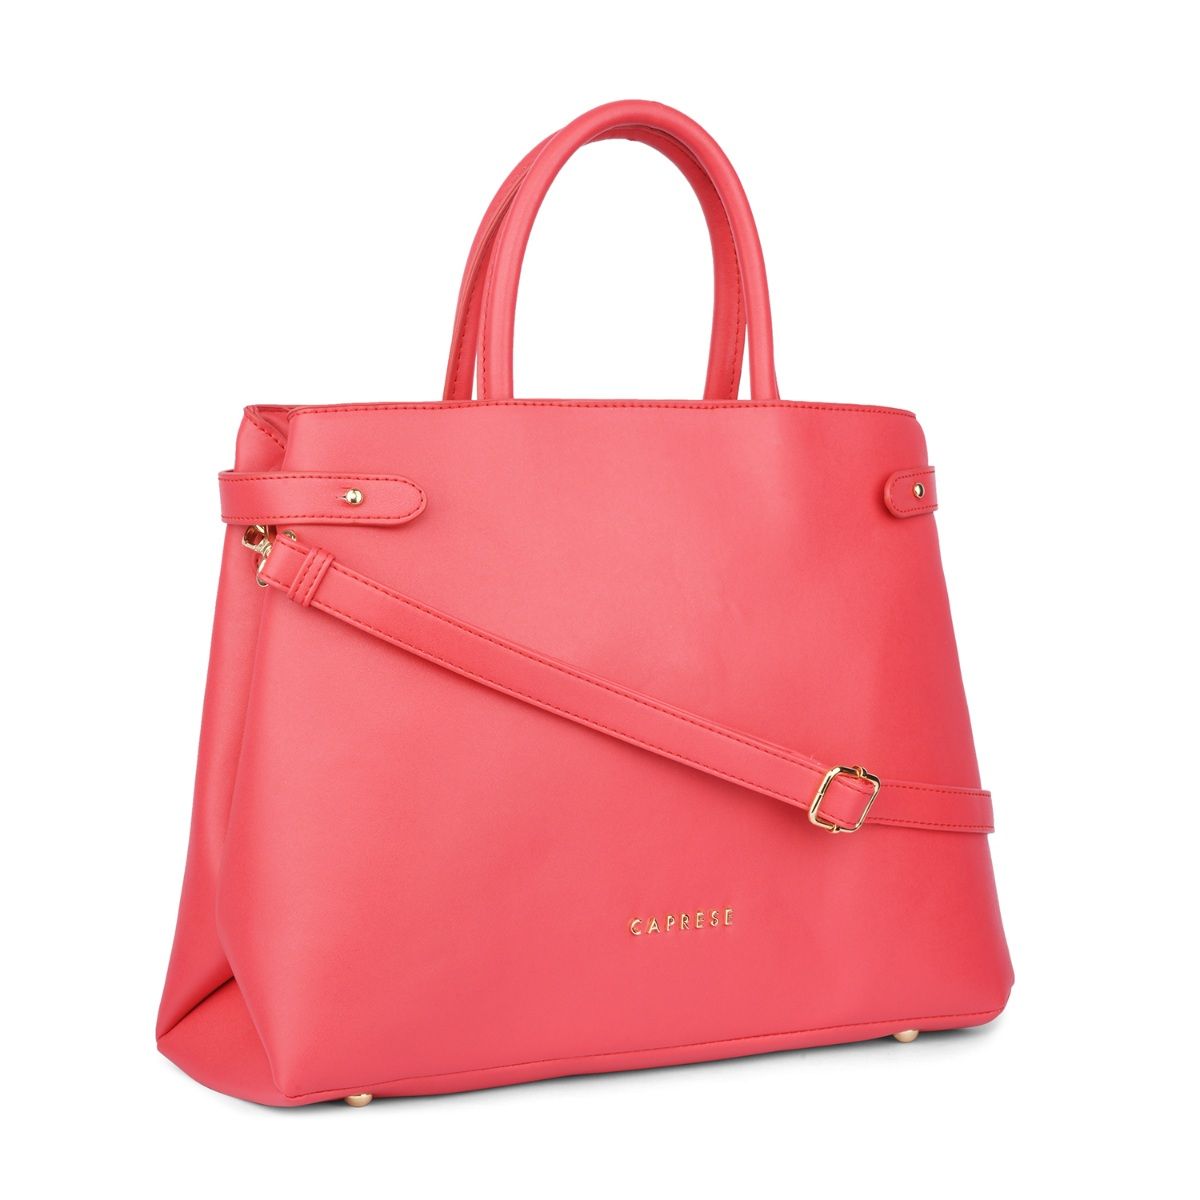 Caprese Dorita Satchel Bag Small Red: Buy Caprese Dorita Satchel Bag ...